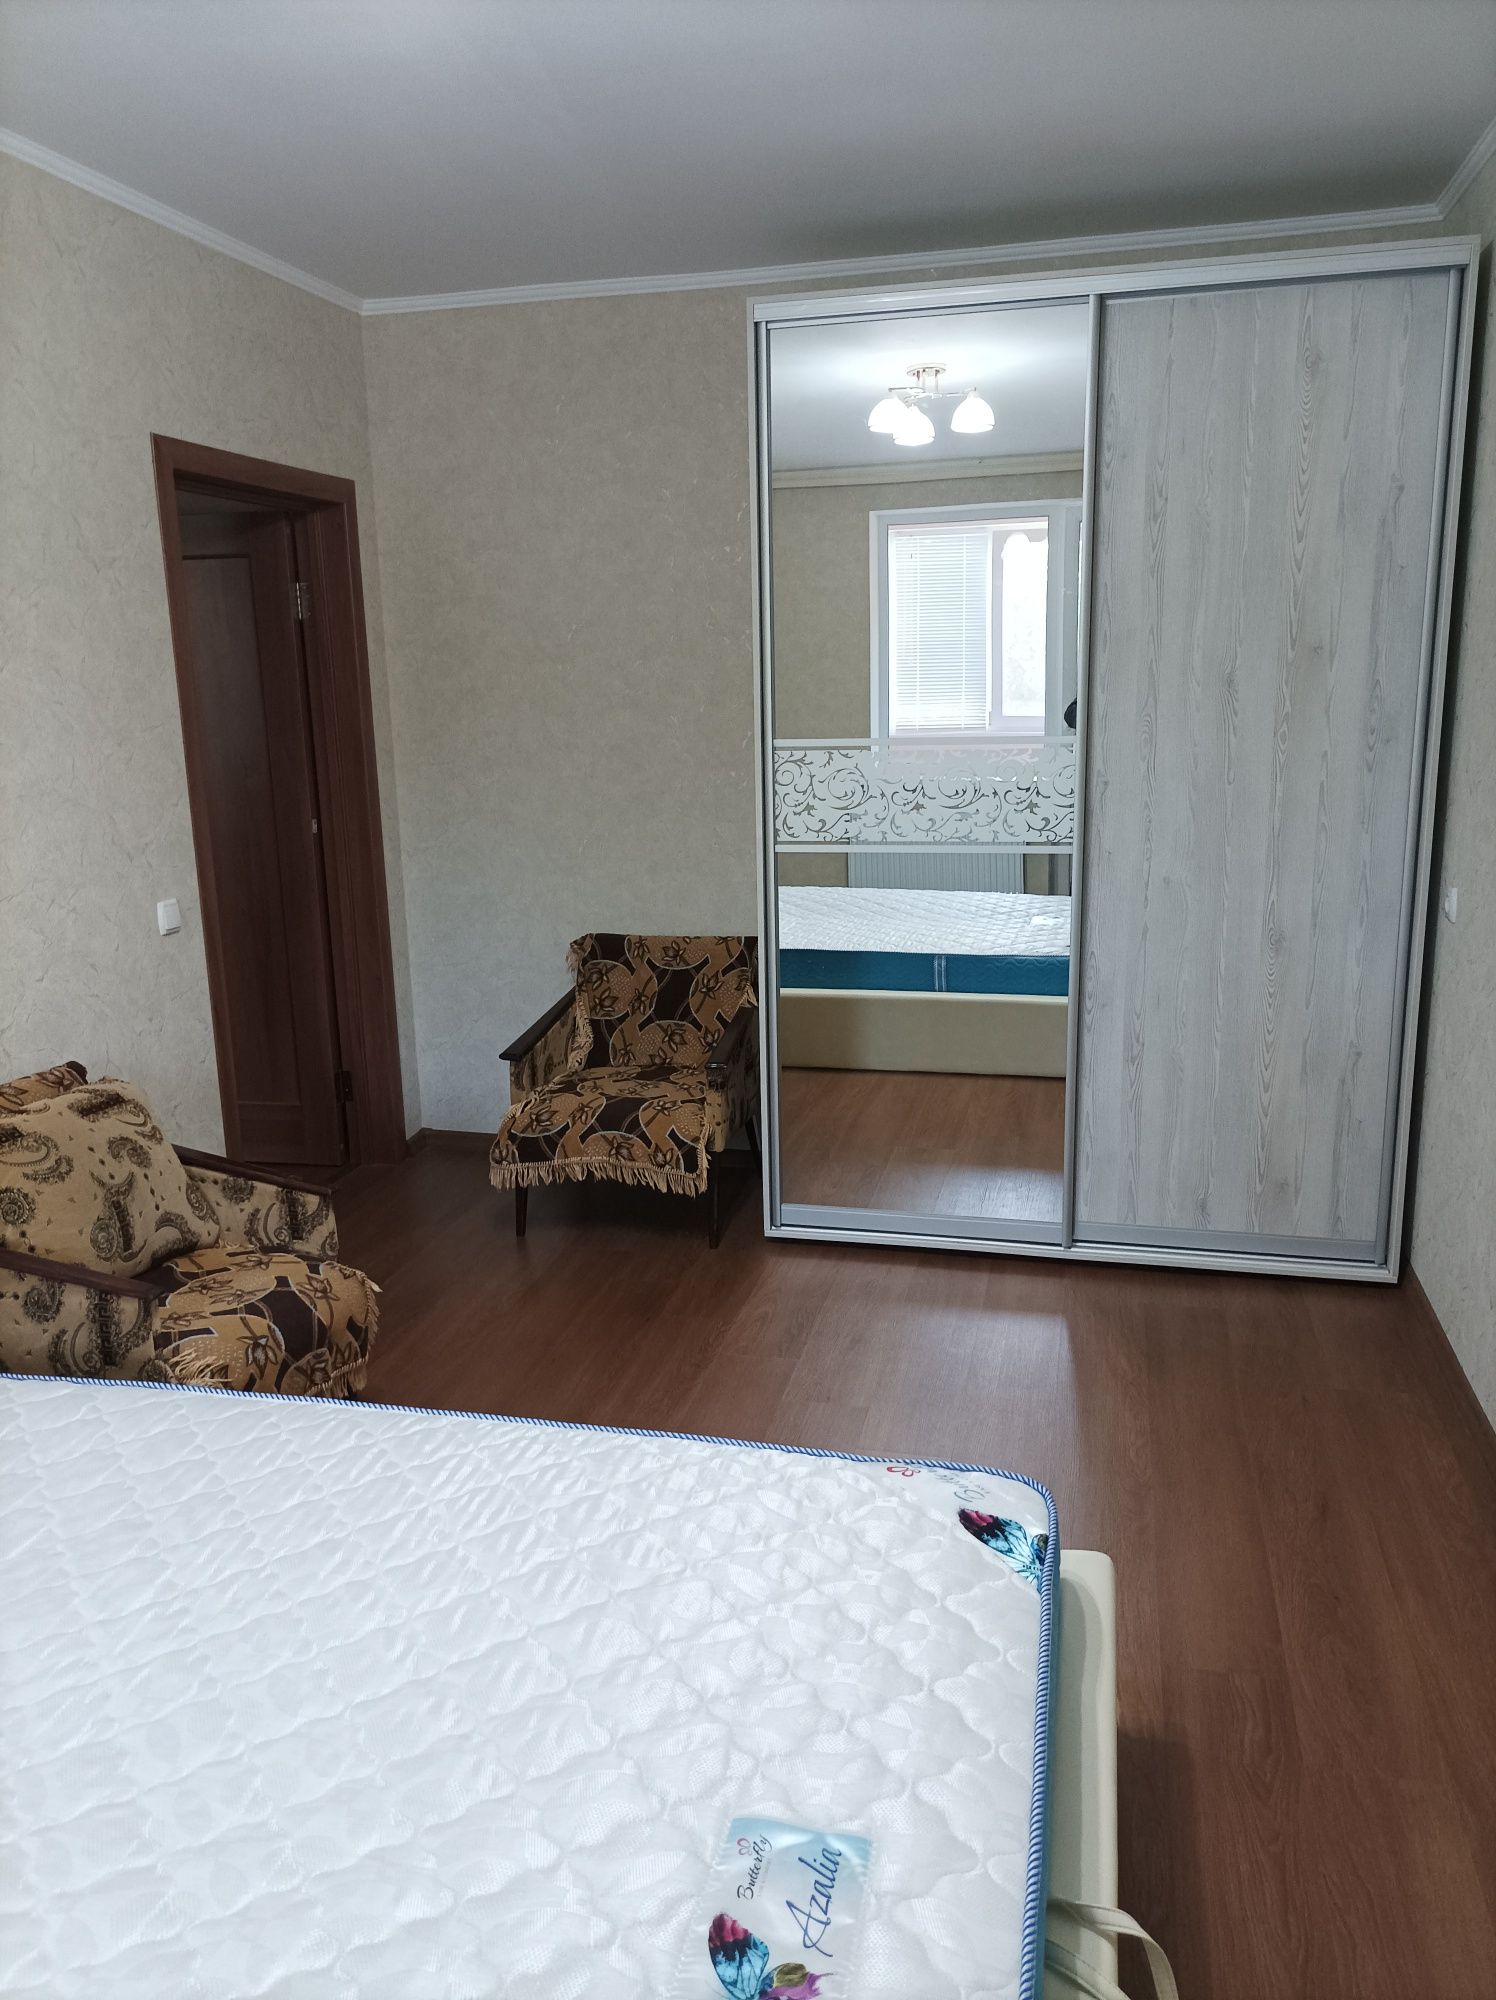 Продам 2комнатную квартиру в новом доме г.Миргород